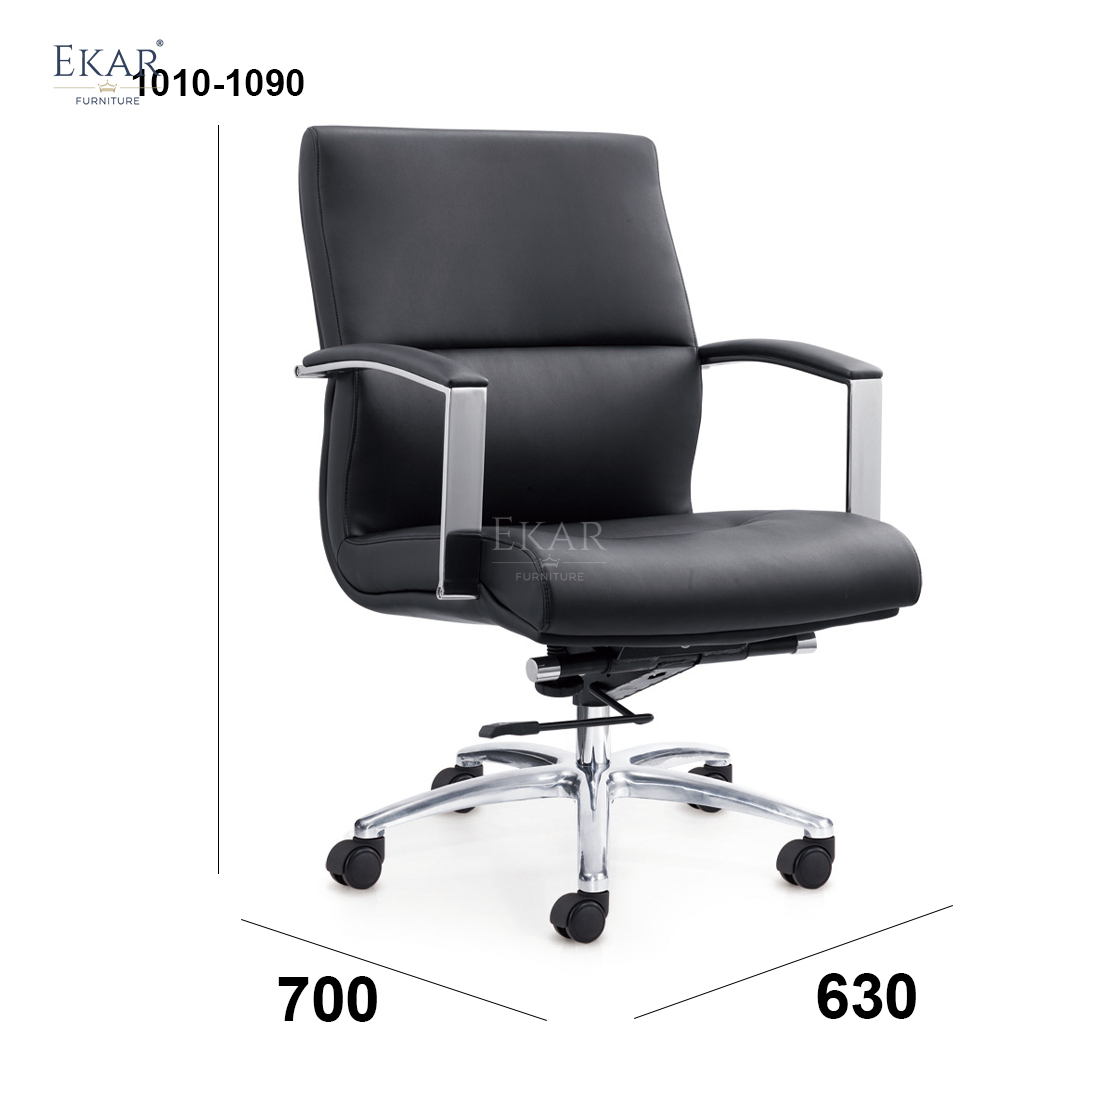 Premium ergonomic seating